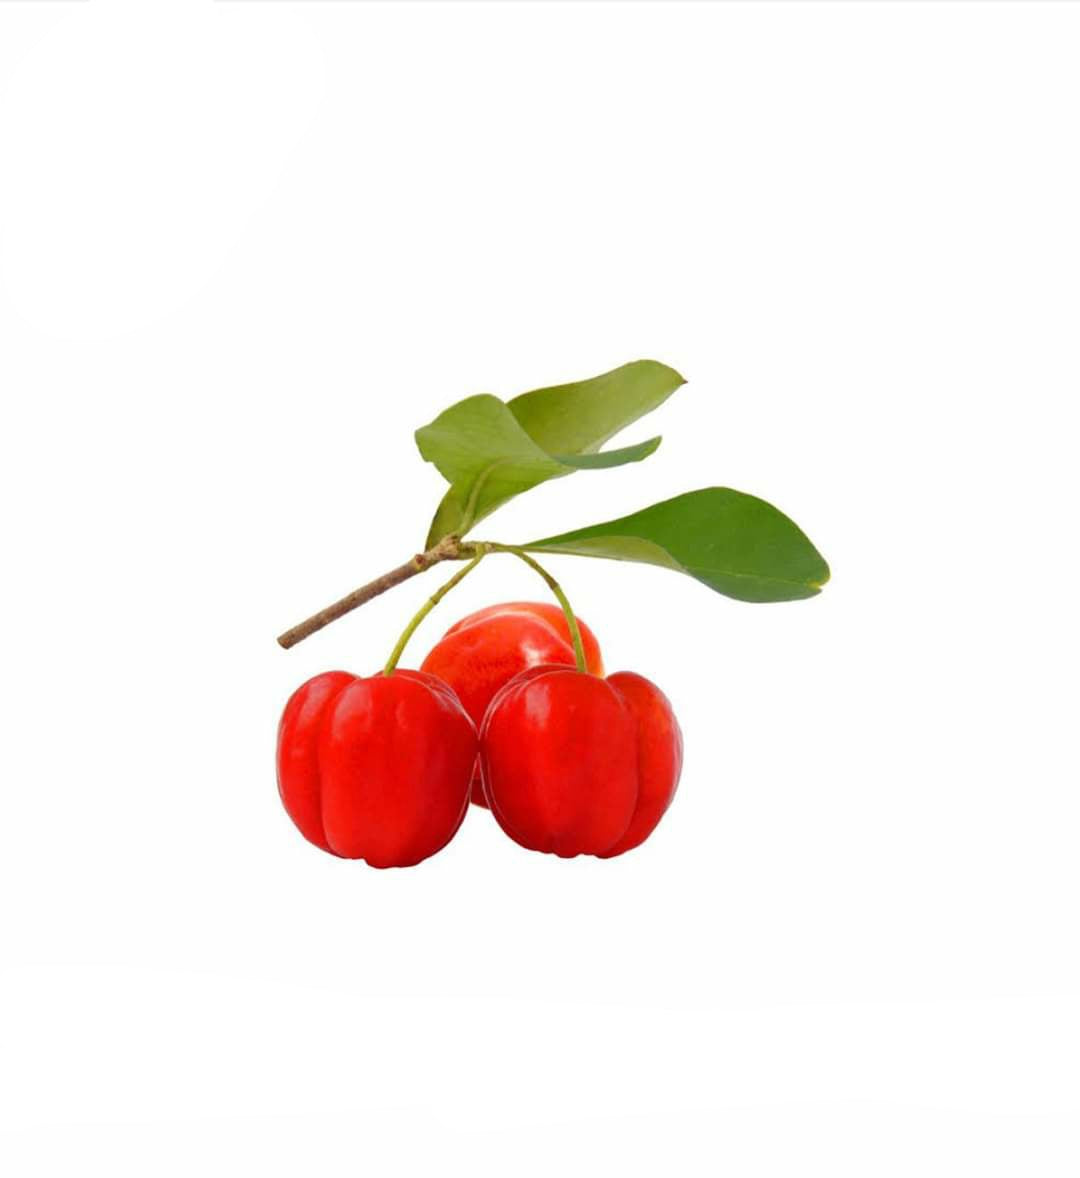 Benefits of Acerola Cherry